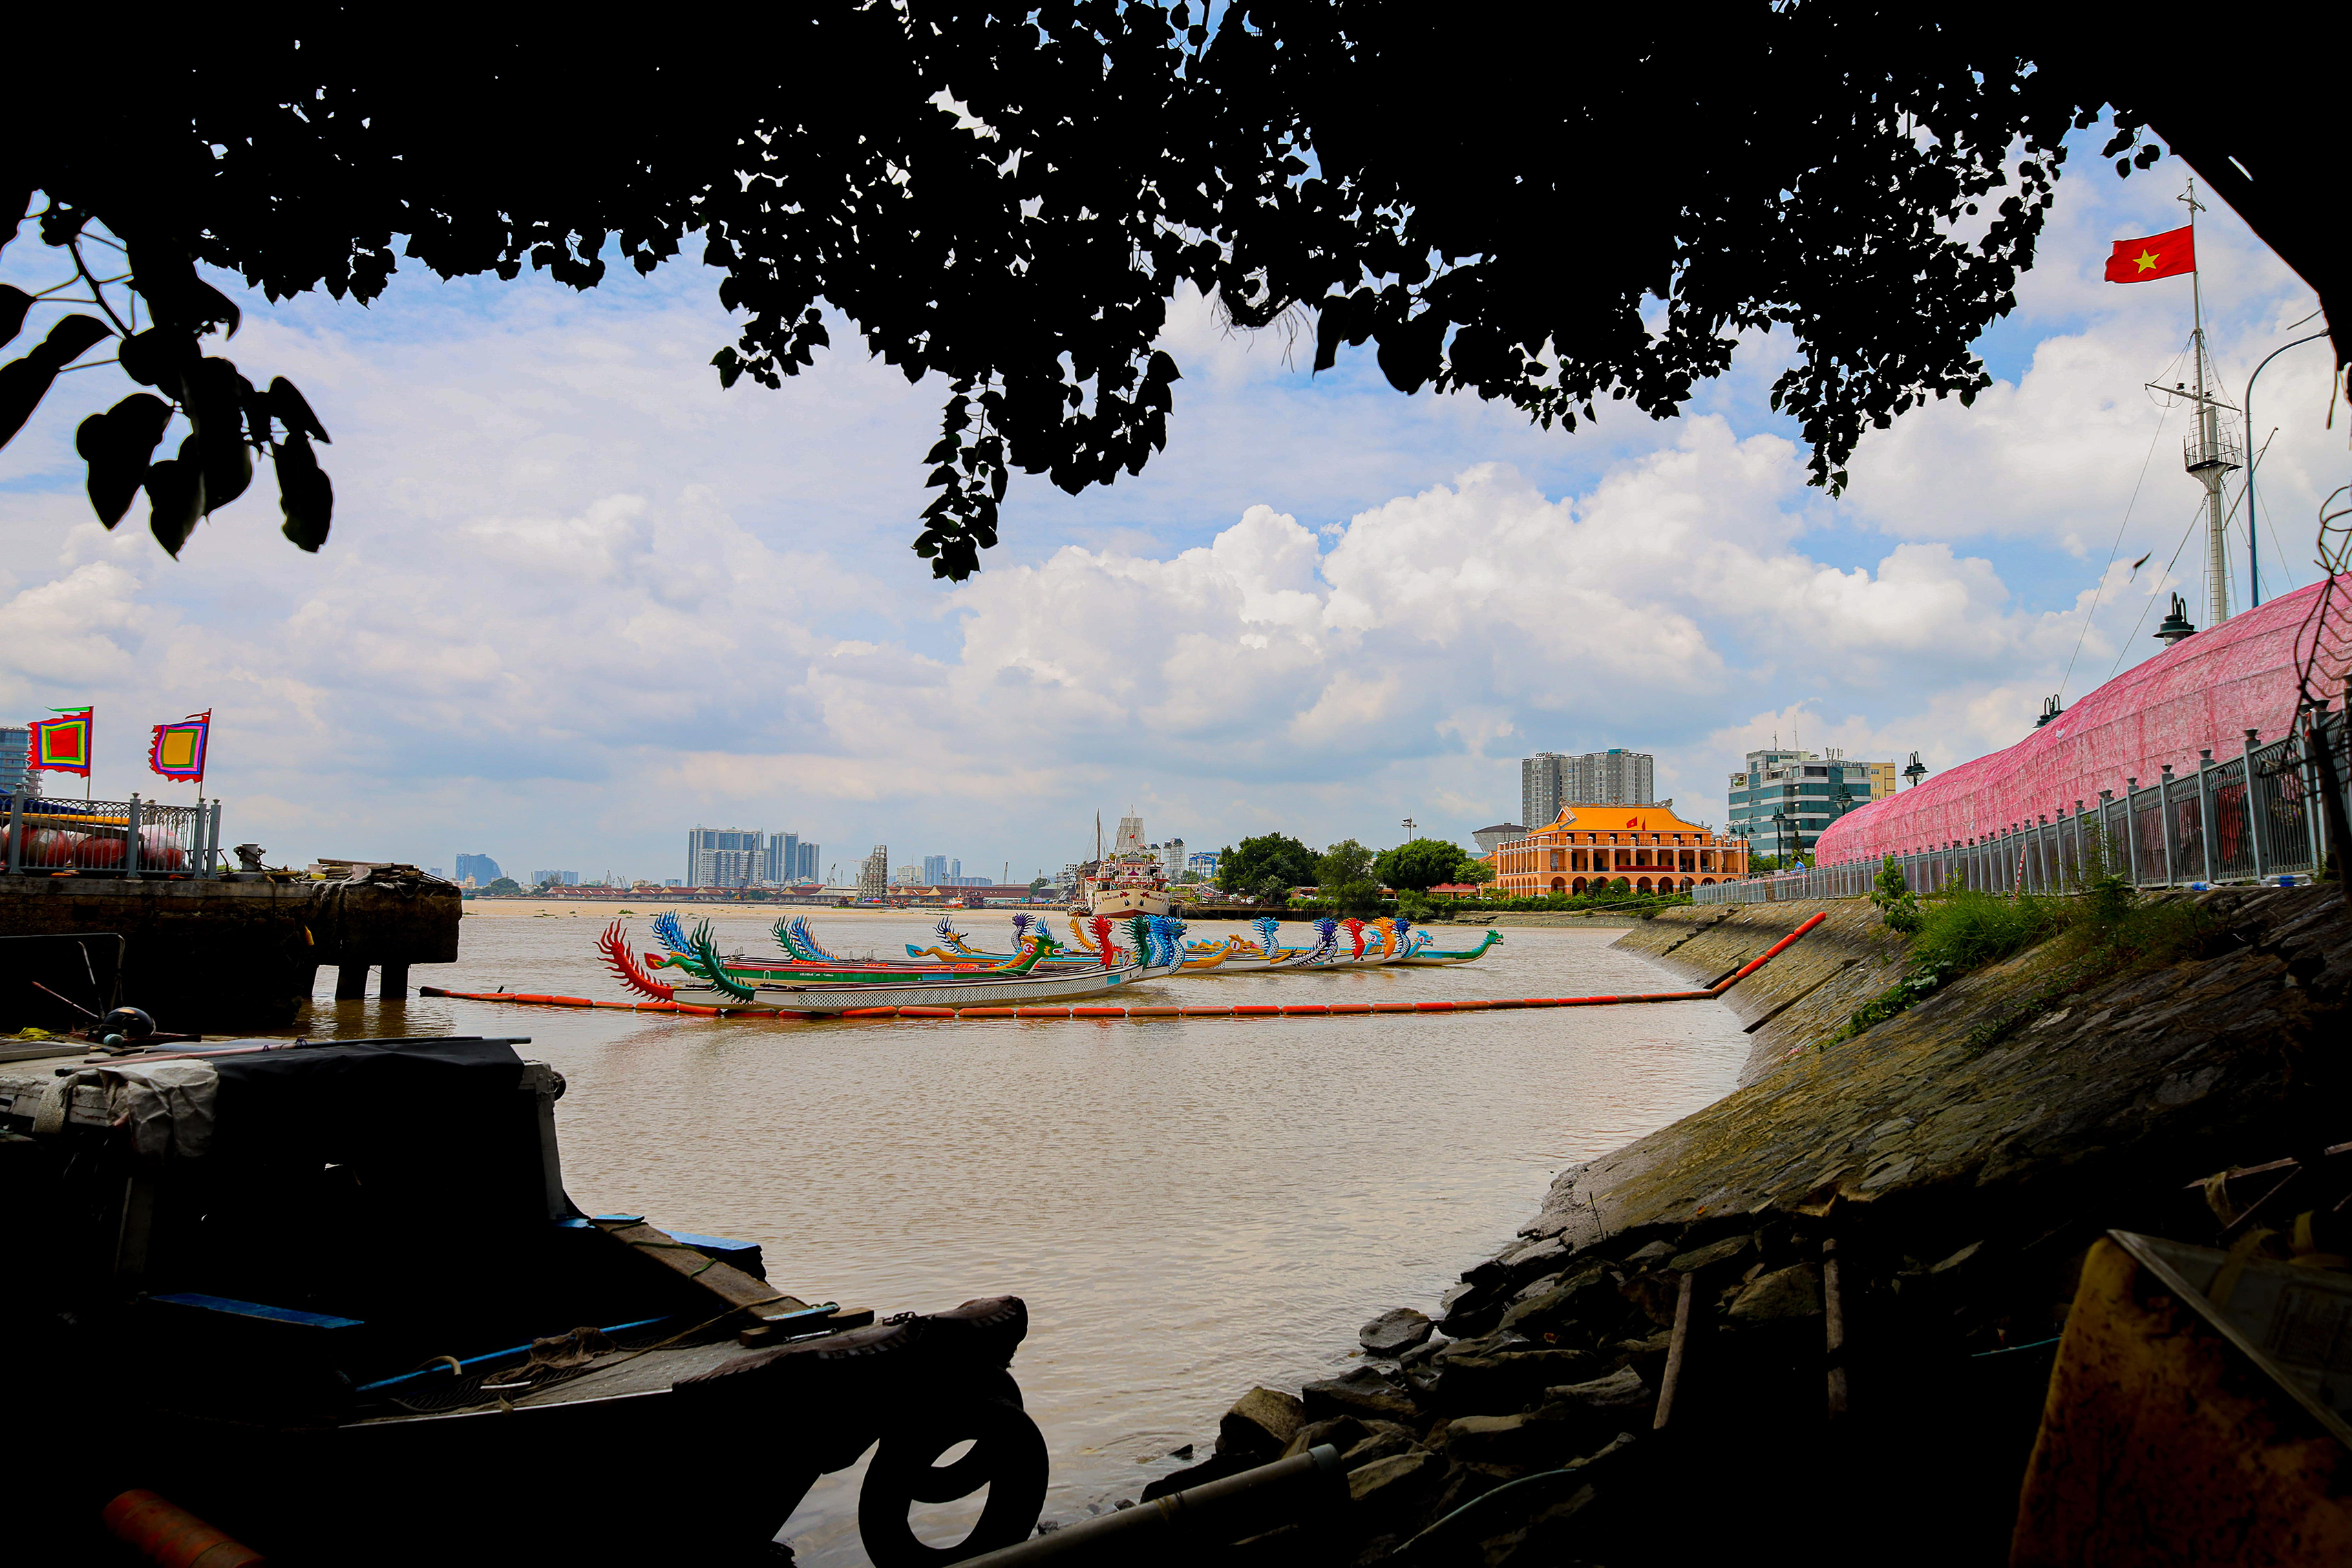 Đoàn ghe ngo trên dòng sông Sài Gòn